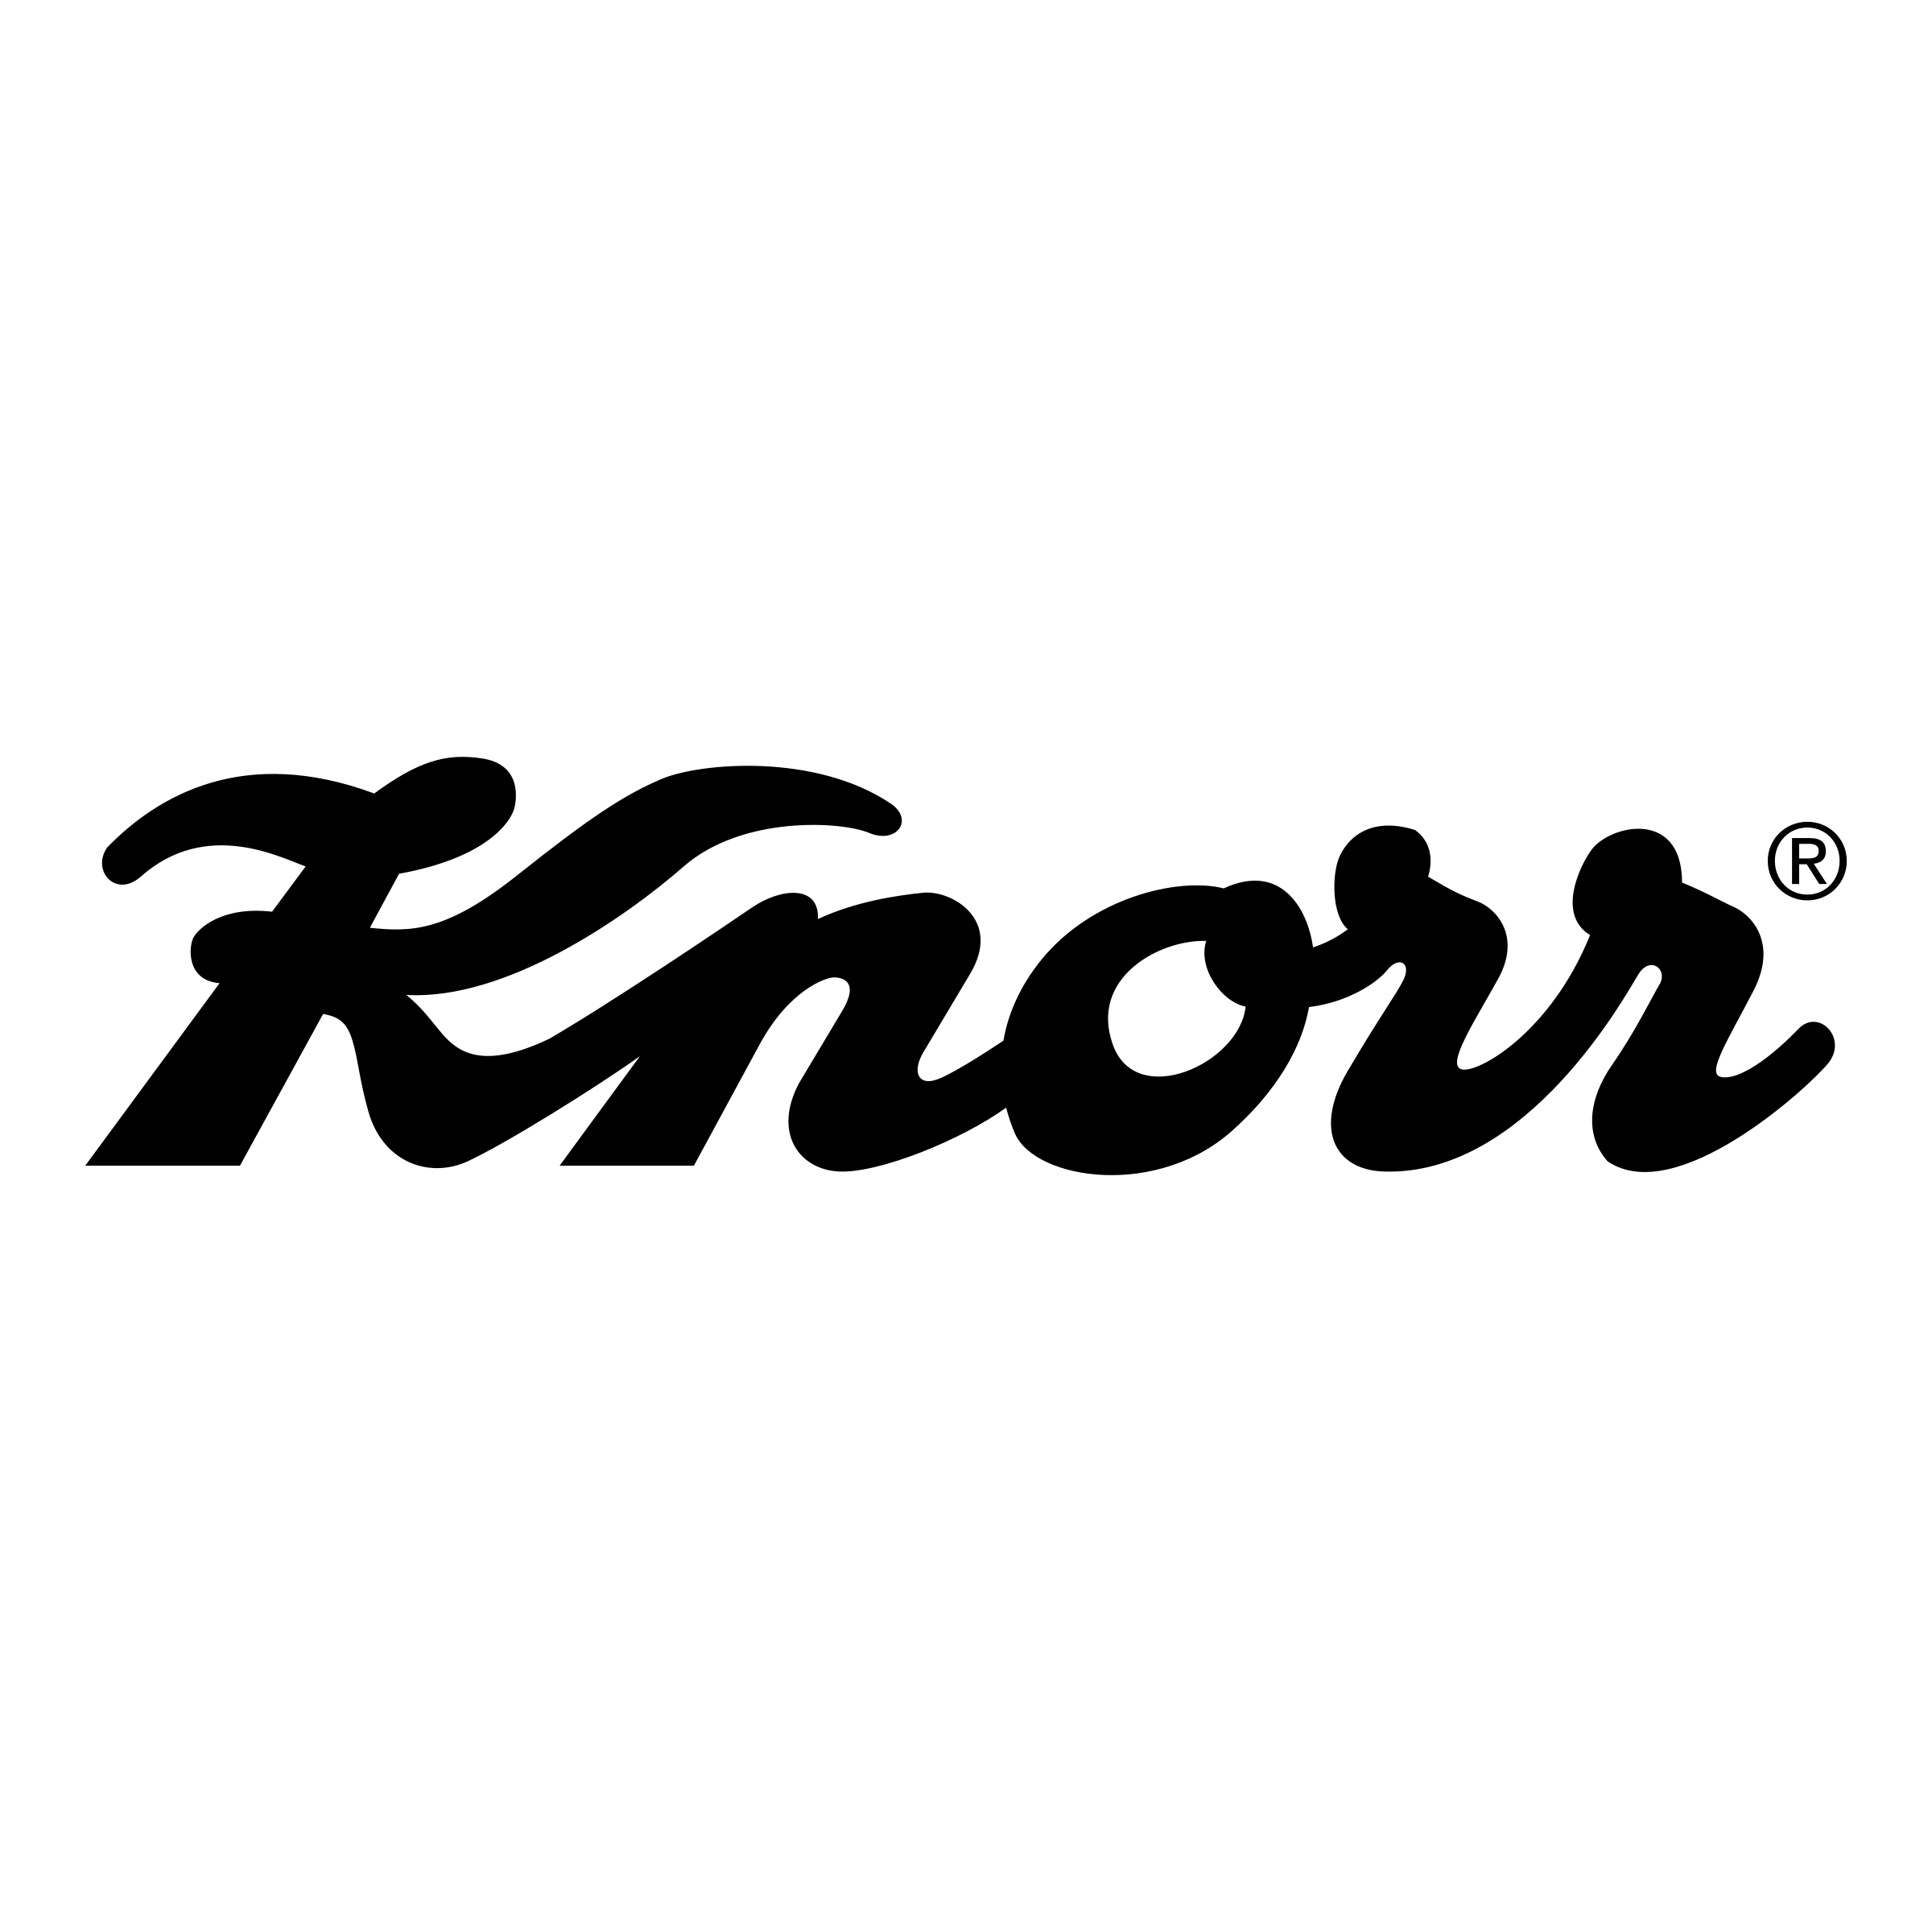 Knorr Logo - Knorr Logo PNG Transparent & SVG Vector - Freebie Supply